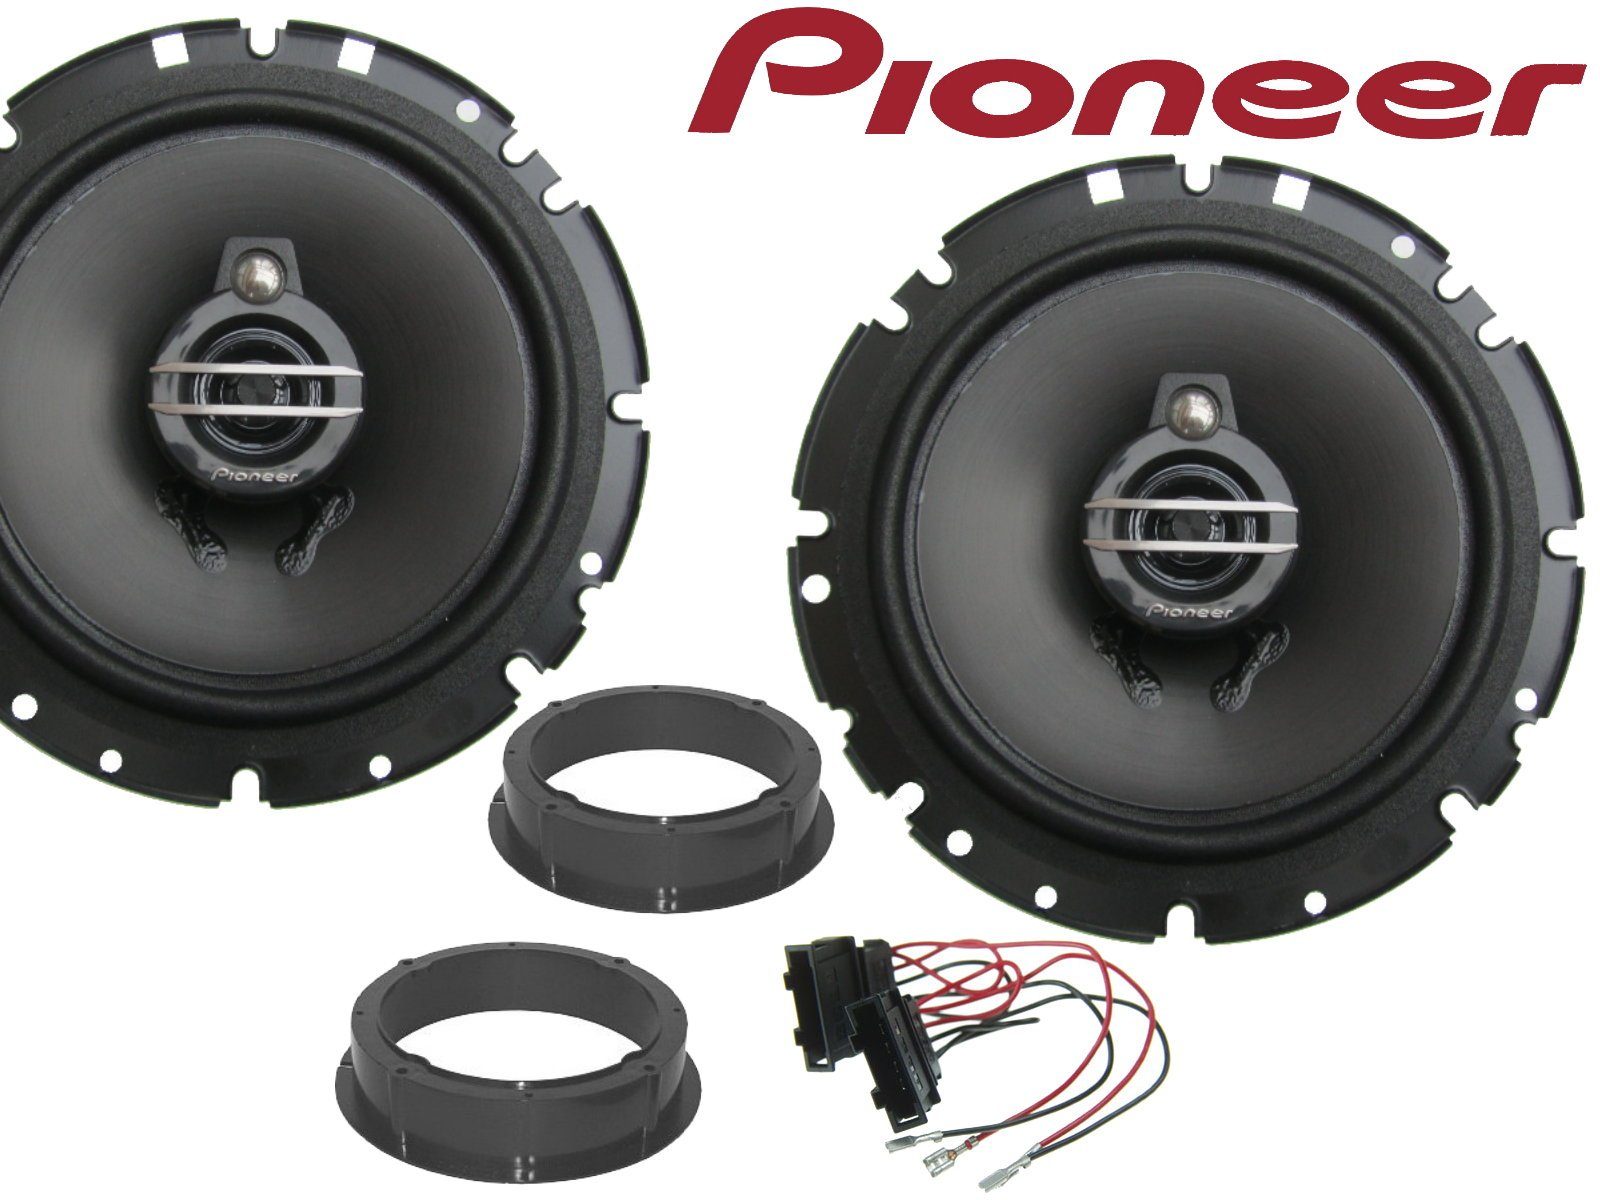 DSX Pioneer 3wege passend für Skoda Fabia 2006 bis 201 Auto-Lautsprecher (40 W)